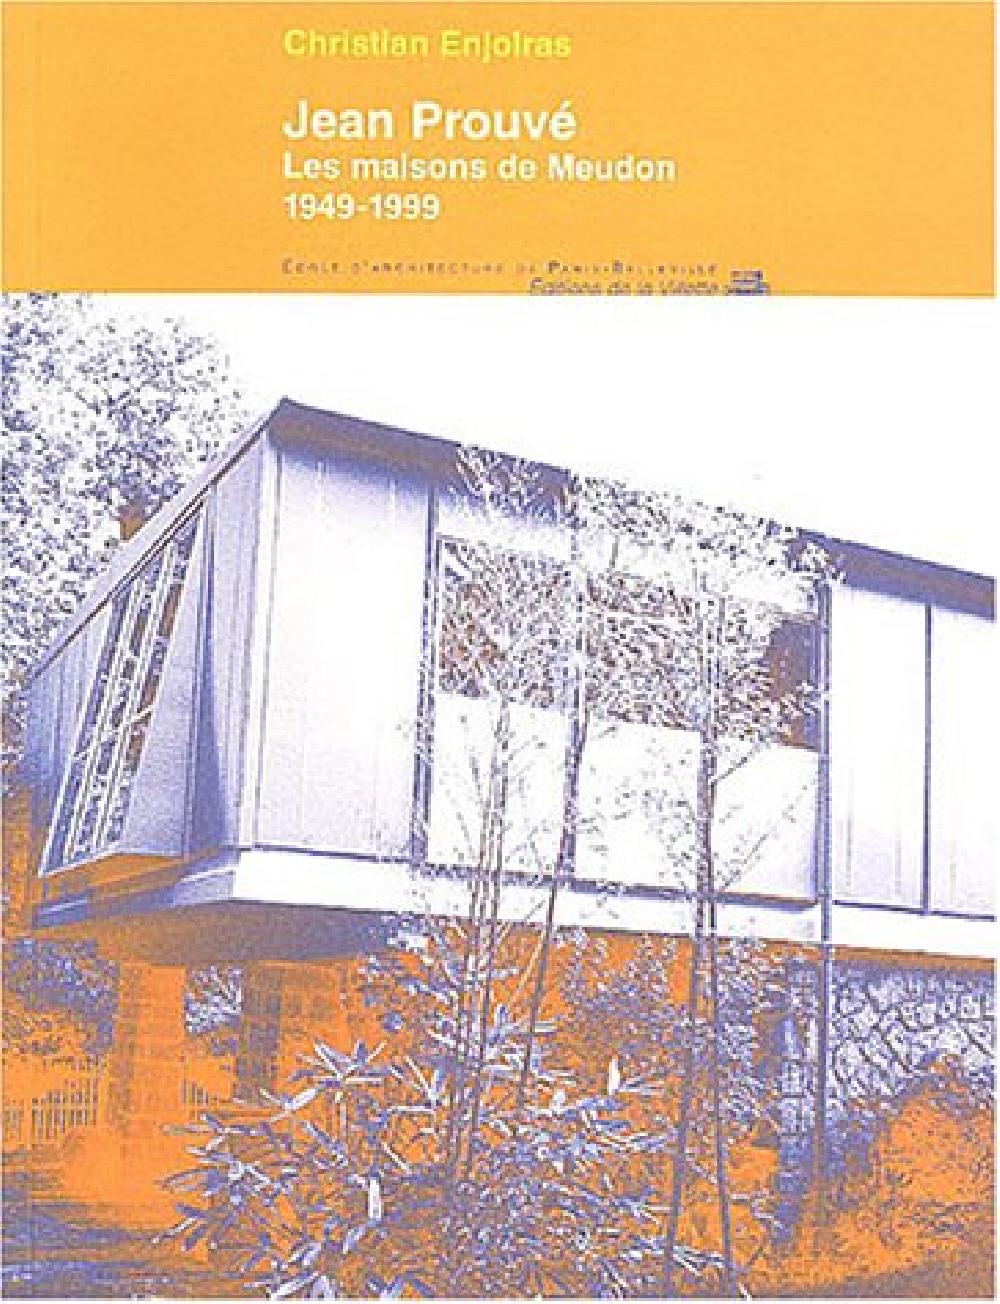 Jean Prouvé - Les maisons de Meudon 1949-1999